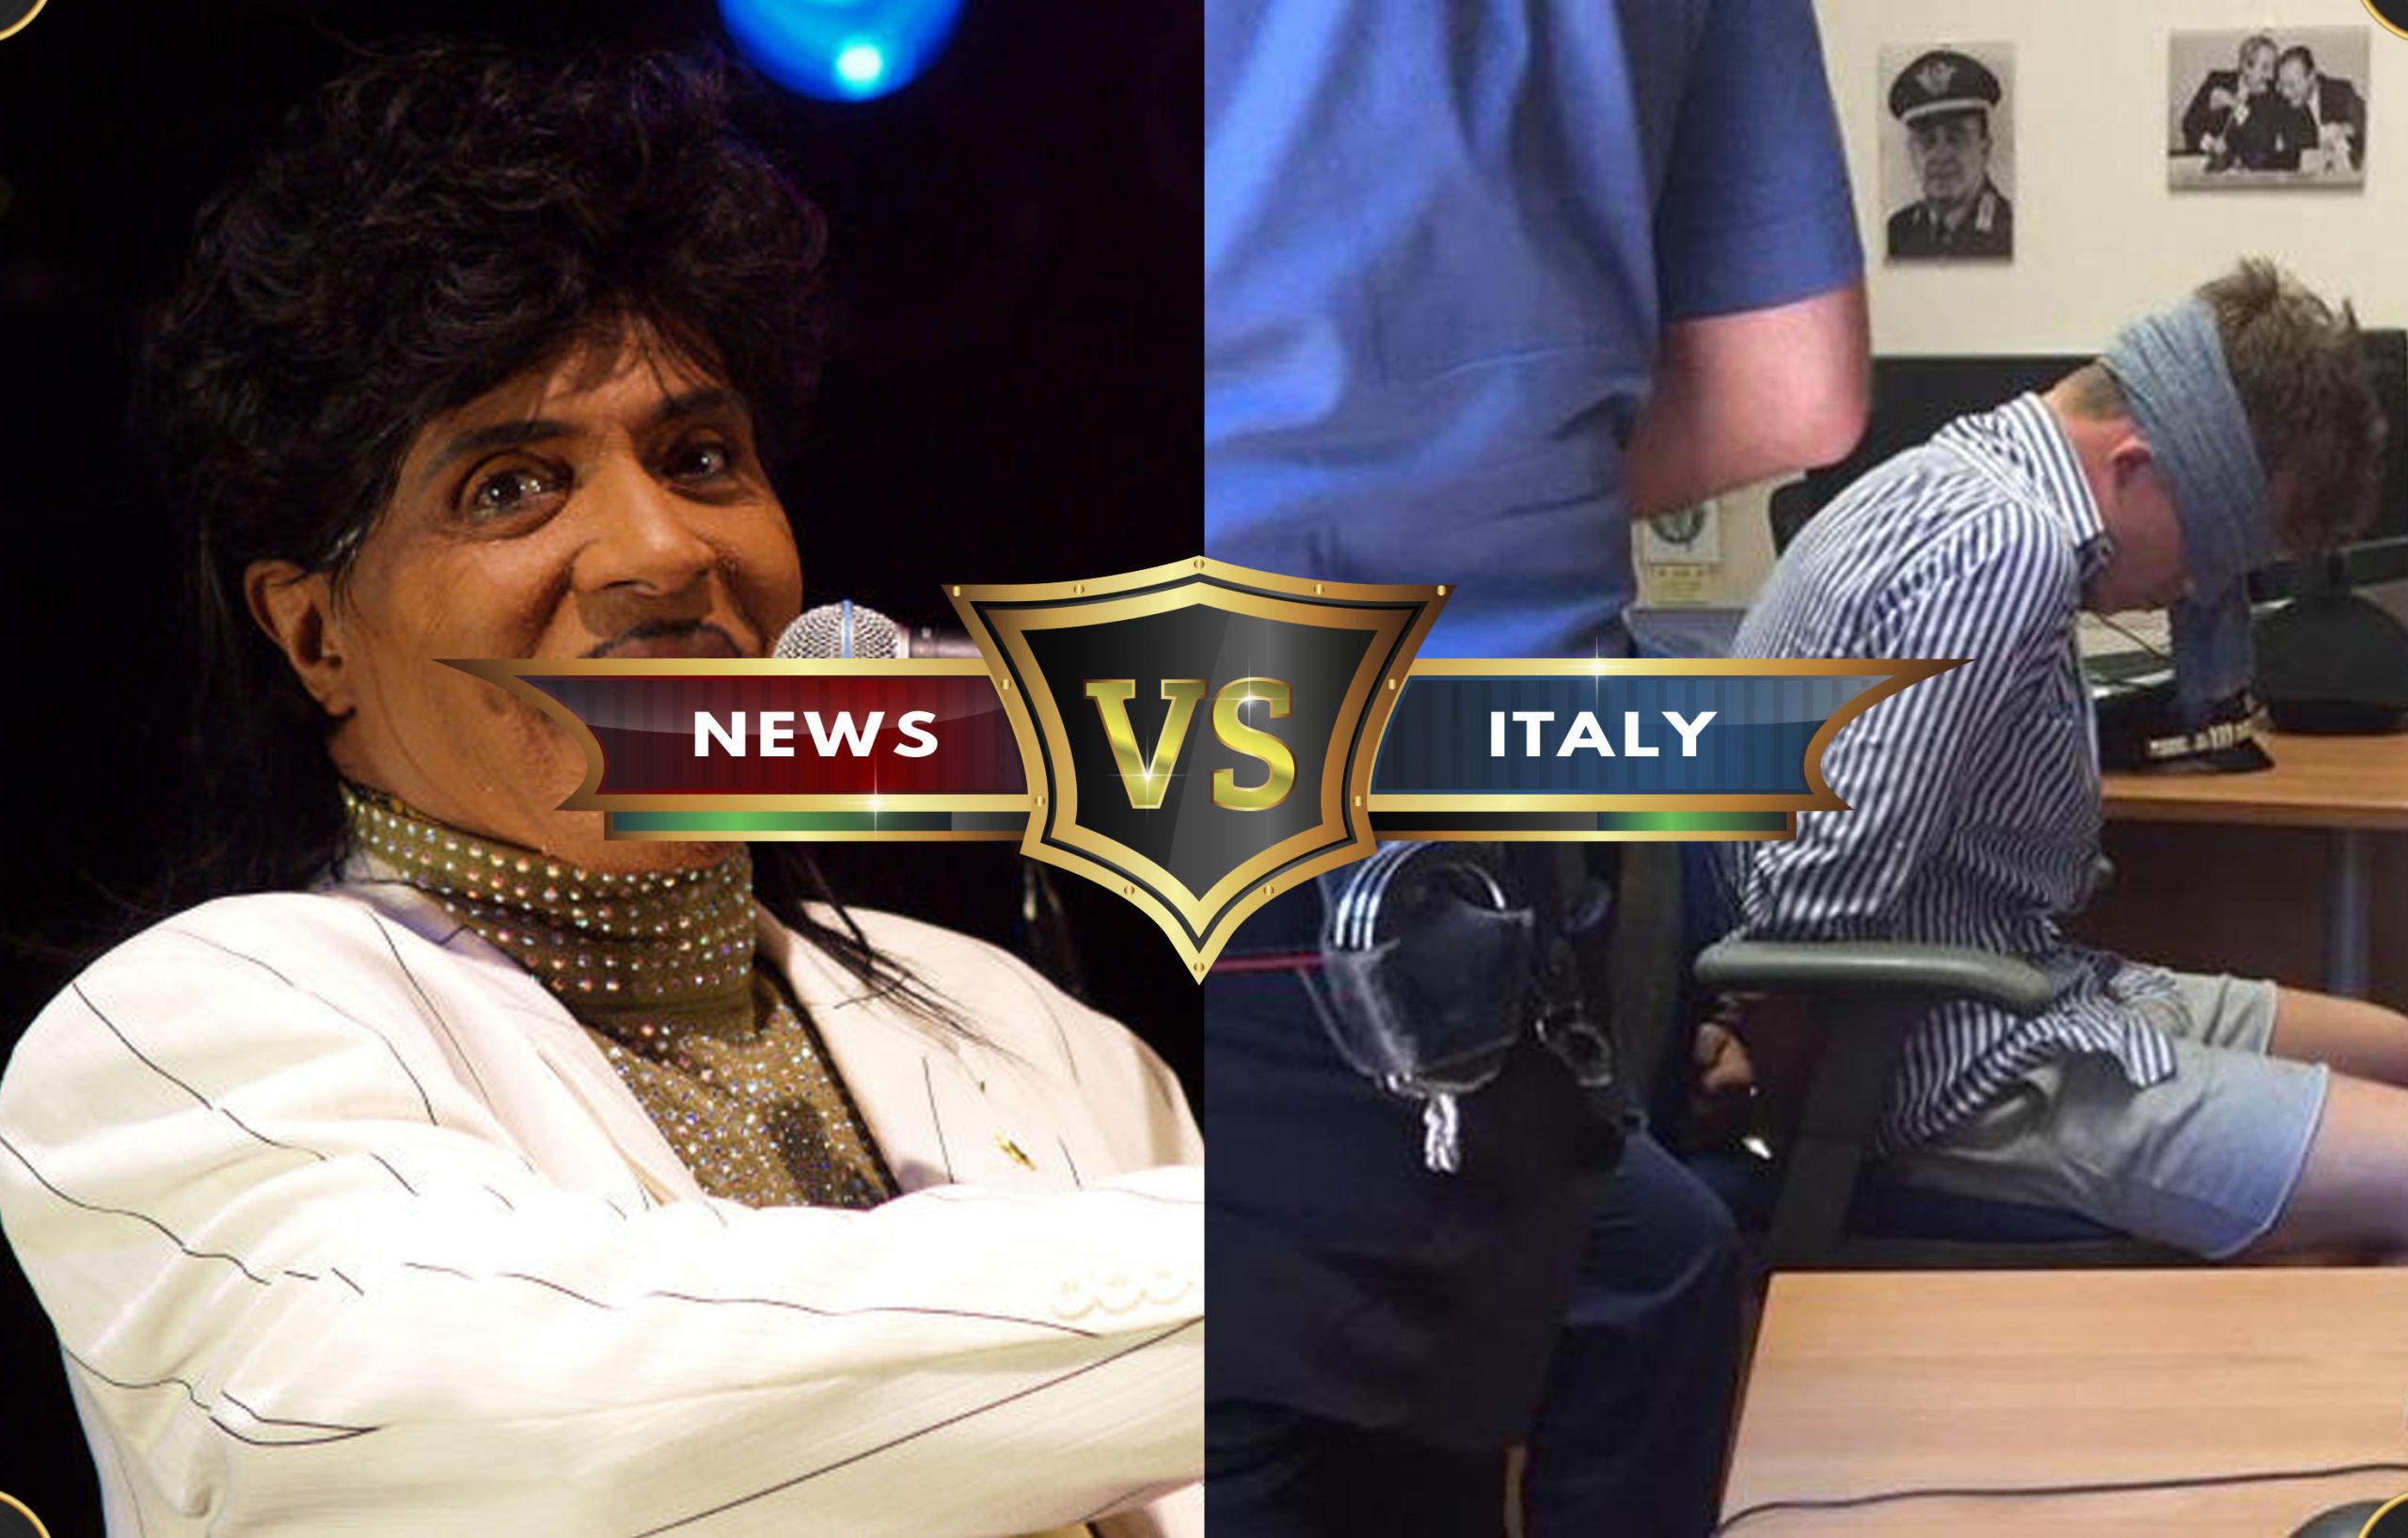 News VS Italy immagine del 13 febbraio 2020